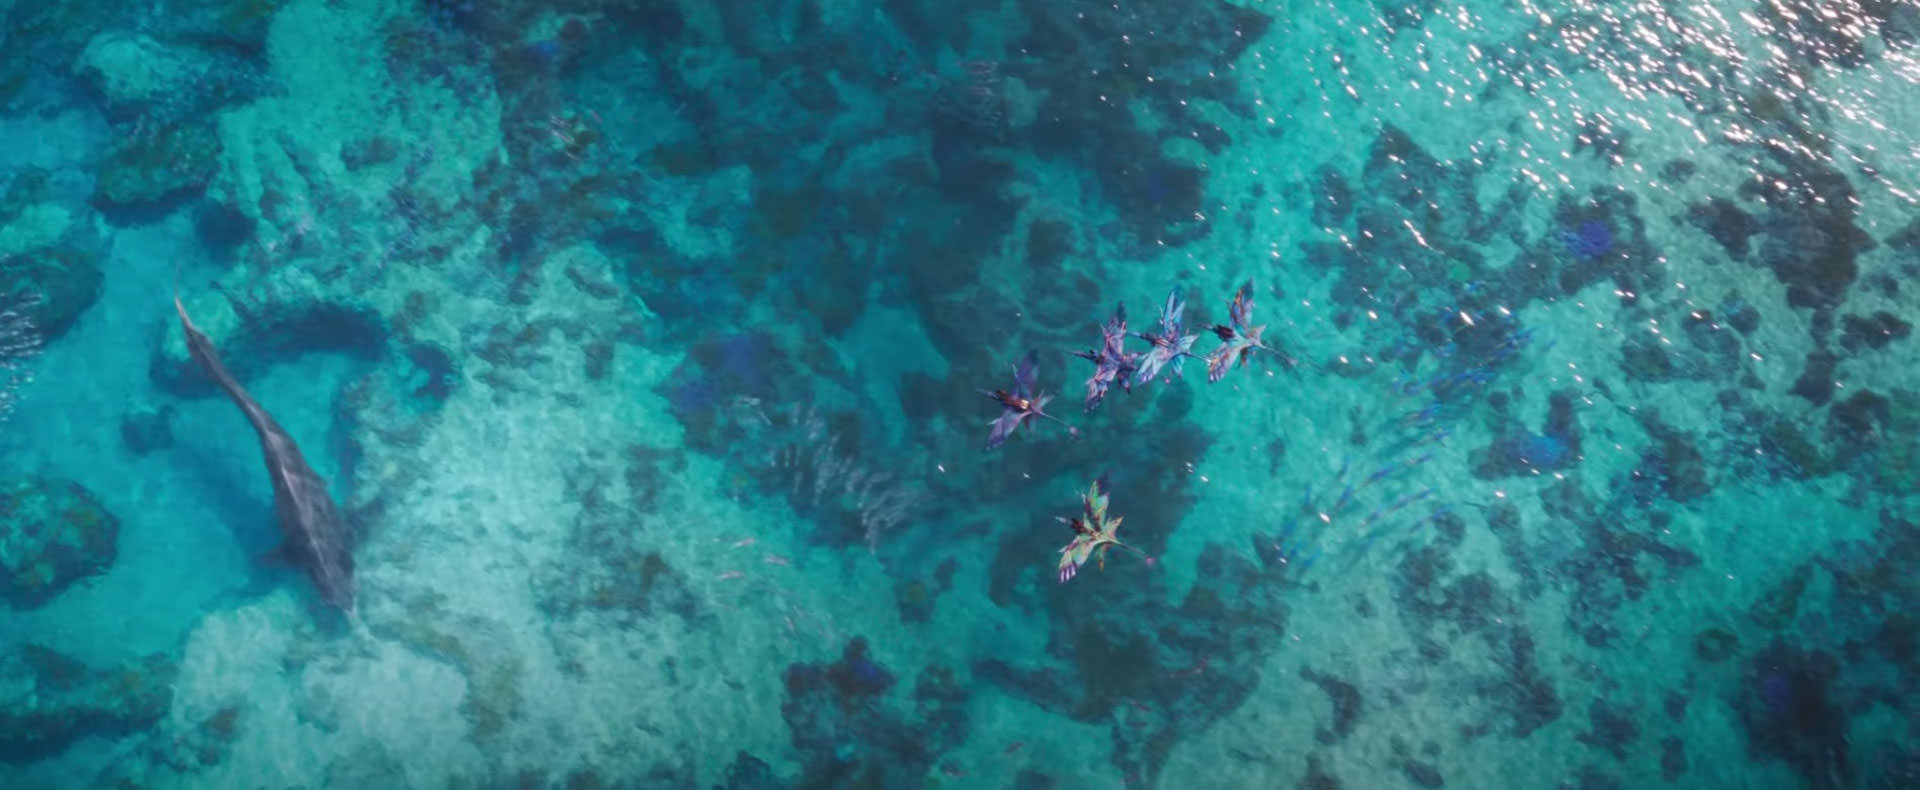 La mer dans le film Avatar by Water, réalisé par James Cameron